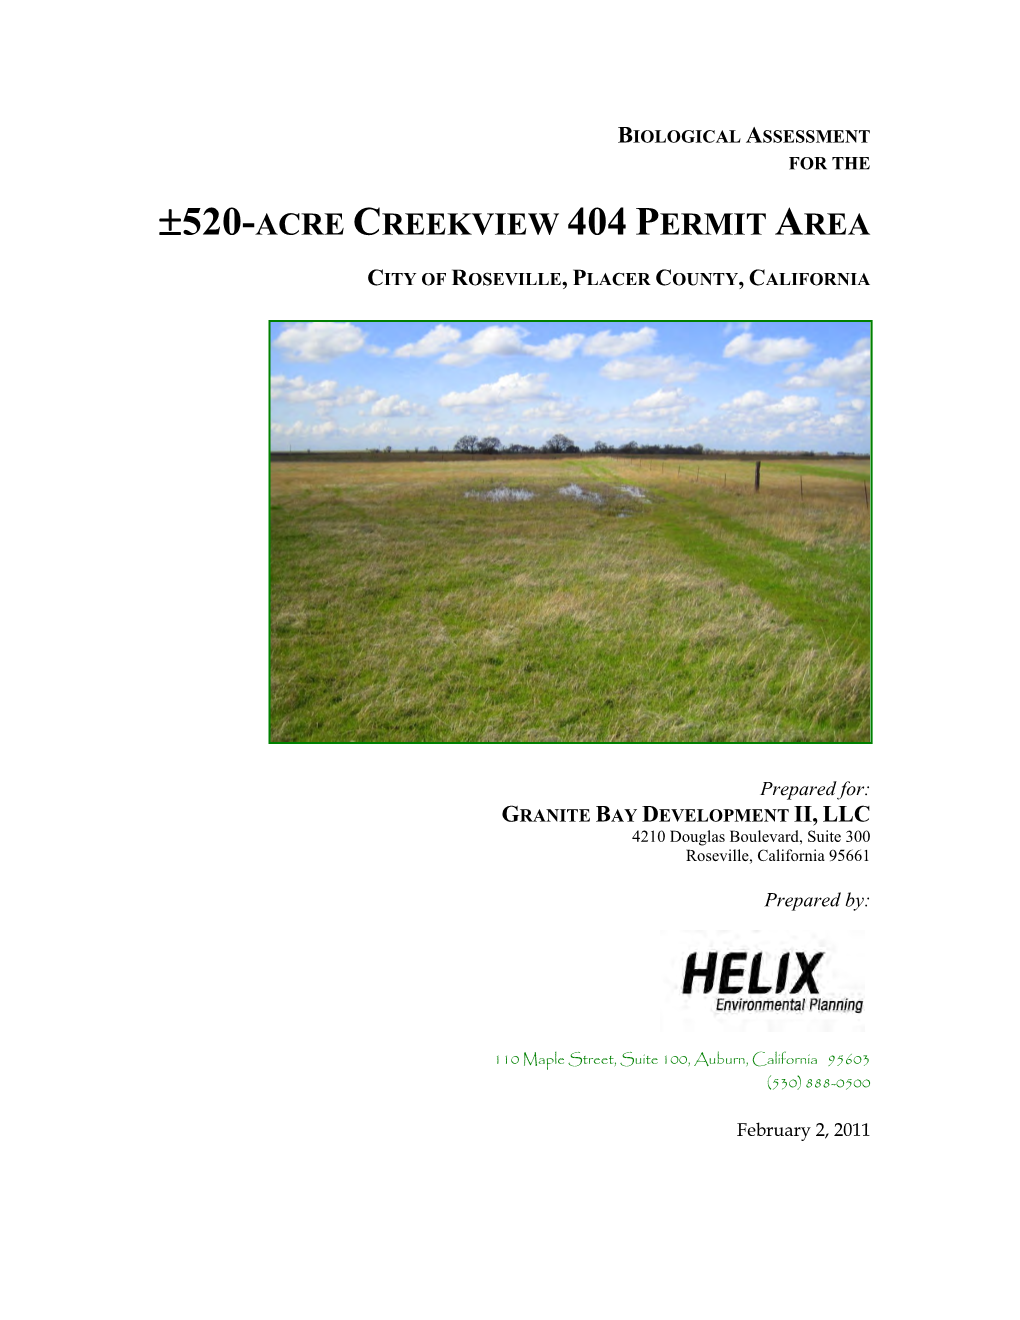 ±520-Acre Creekview 404 Permit Area